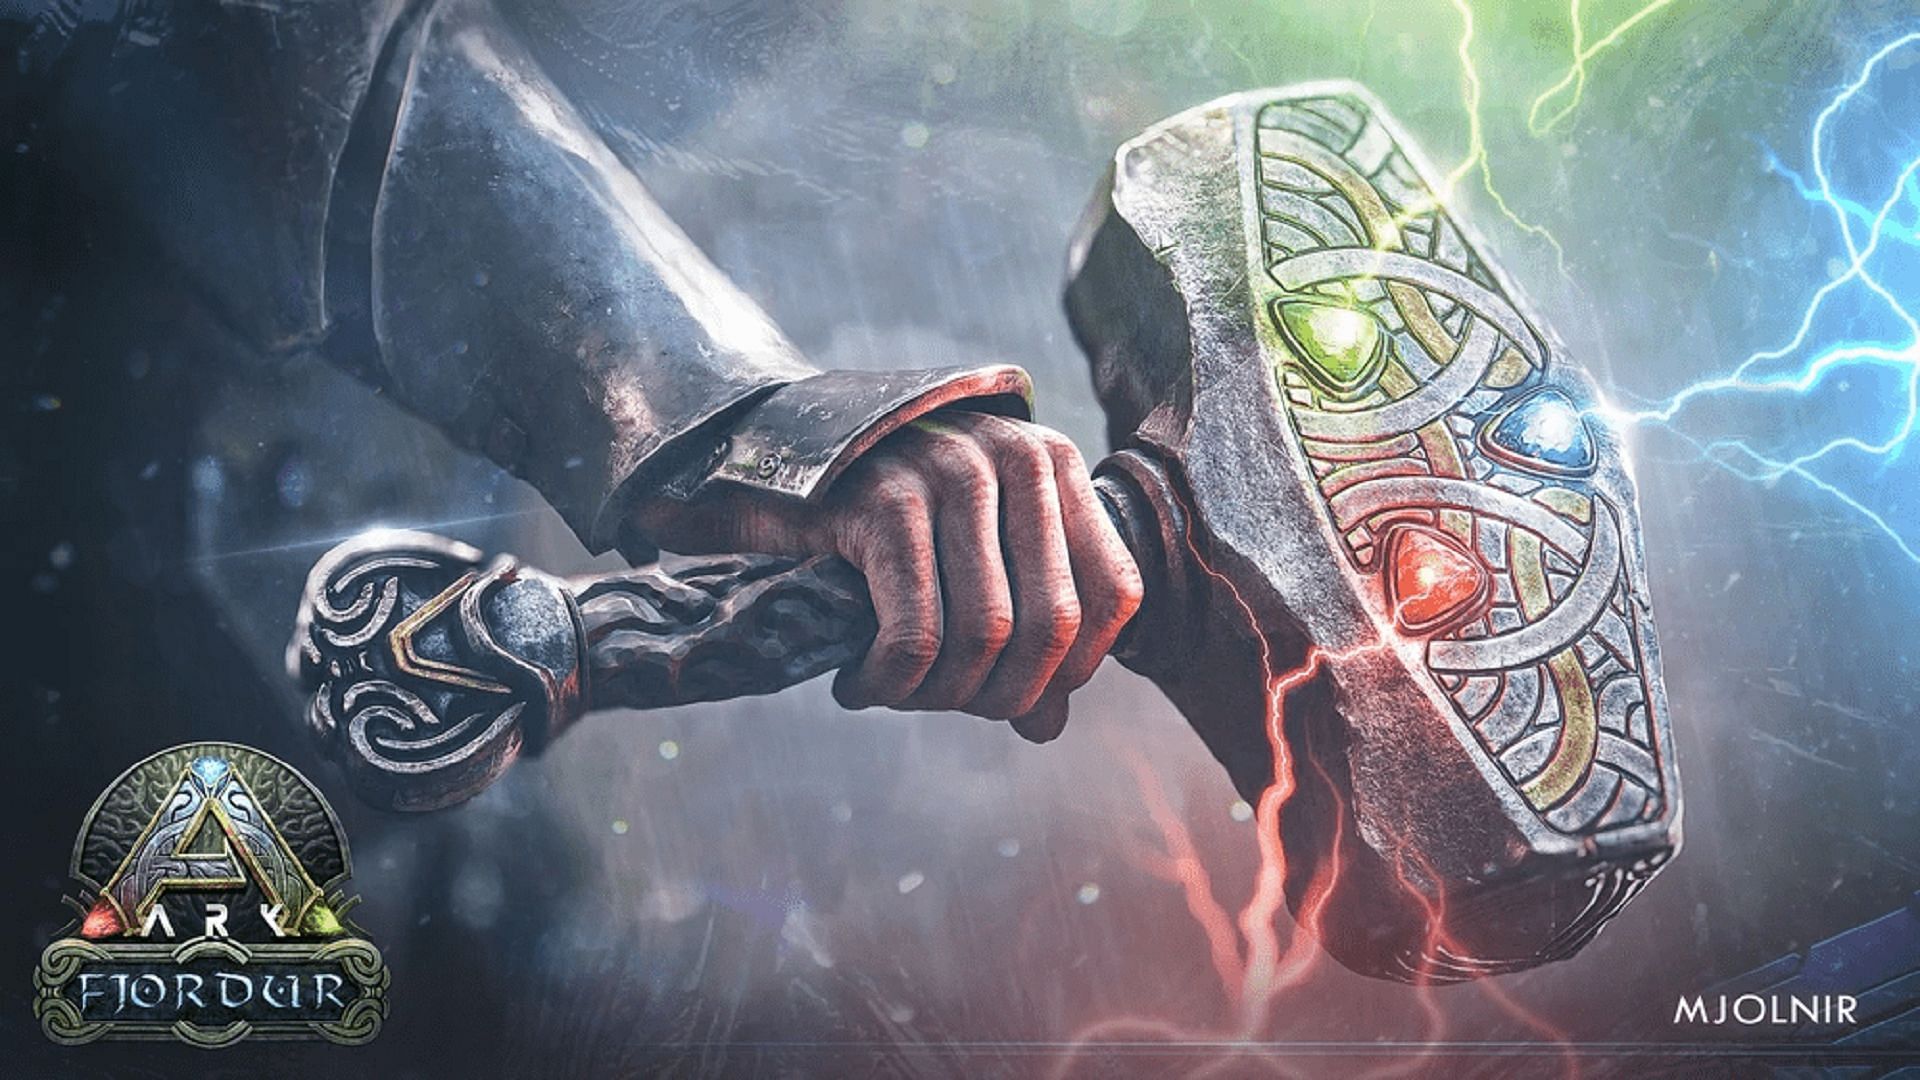 The Mjolnir Tek Blade skin in Ark: Survival Evolved (Image via Studio Wildcard)